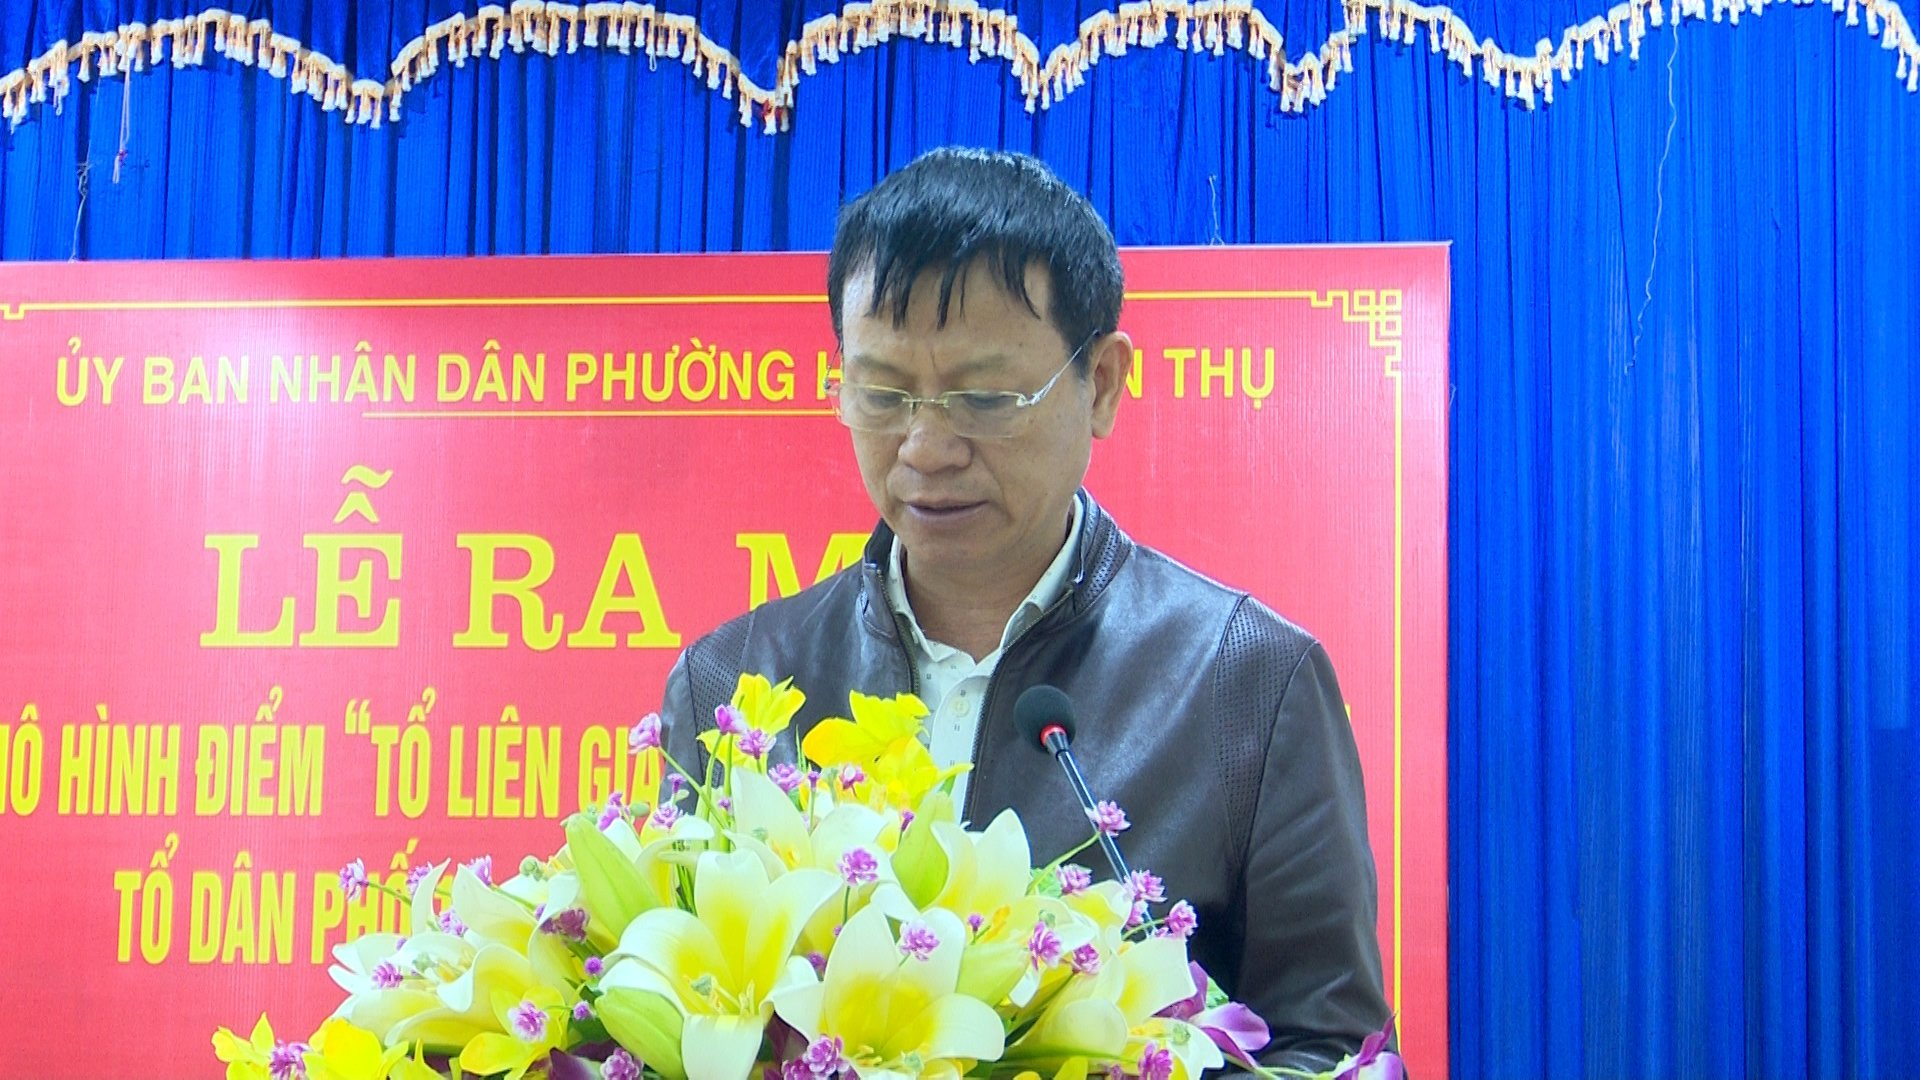 Ông Lê Văn Tuấn, Tổ trưởng Tổ liên gia phòng cháy chữa cháy, Tổ dân phố số 15 phát biểu tại buổi lễ.